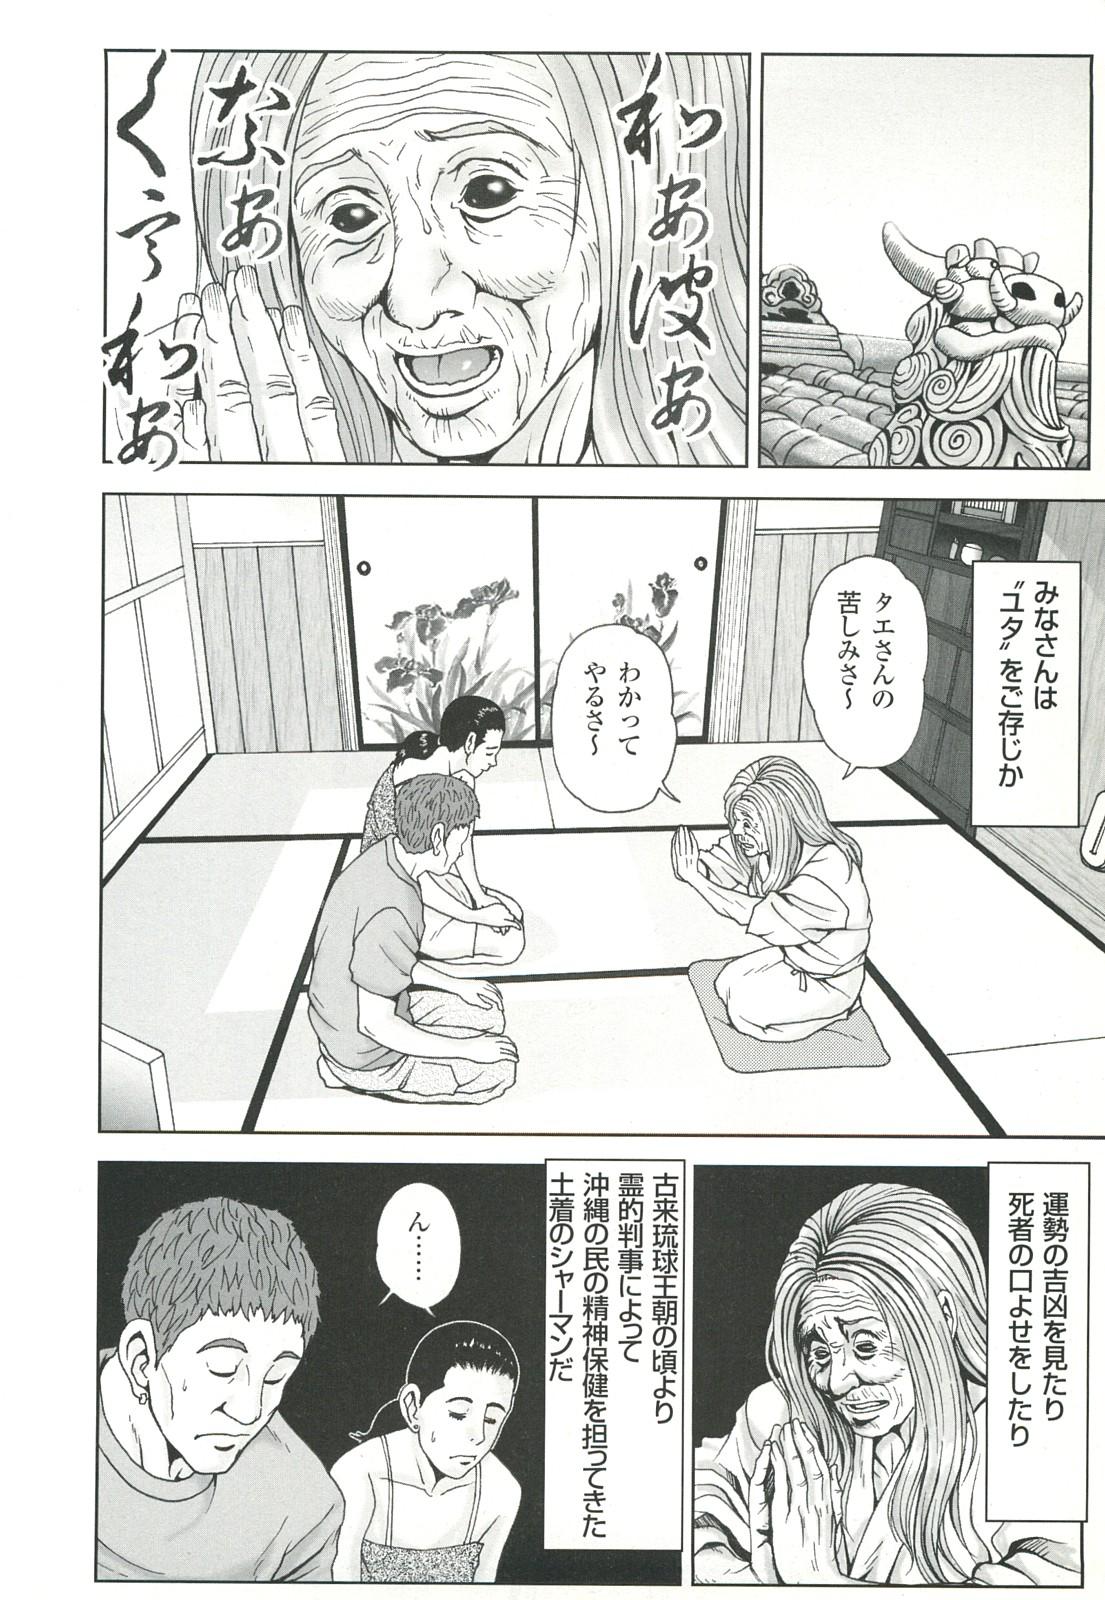 コミック裏モノJAPAN Vol.18 今井のりたつスペシャル号 41